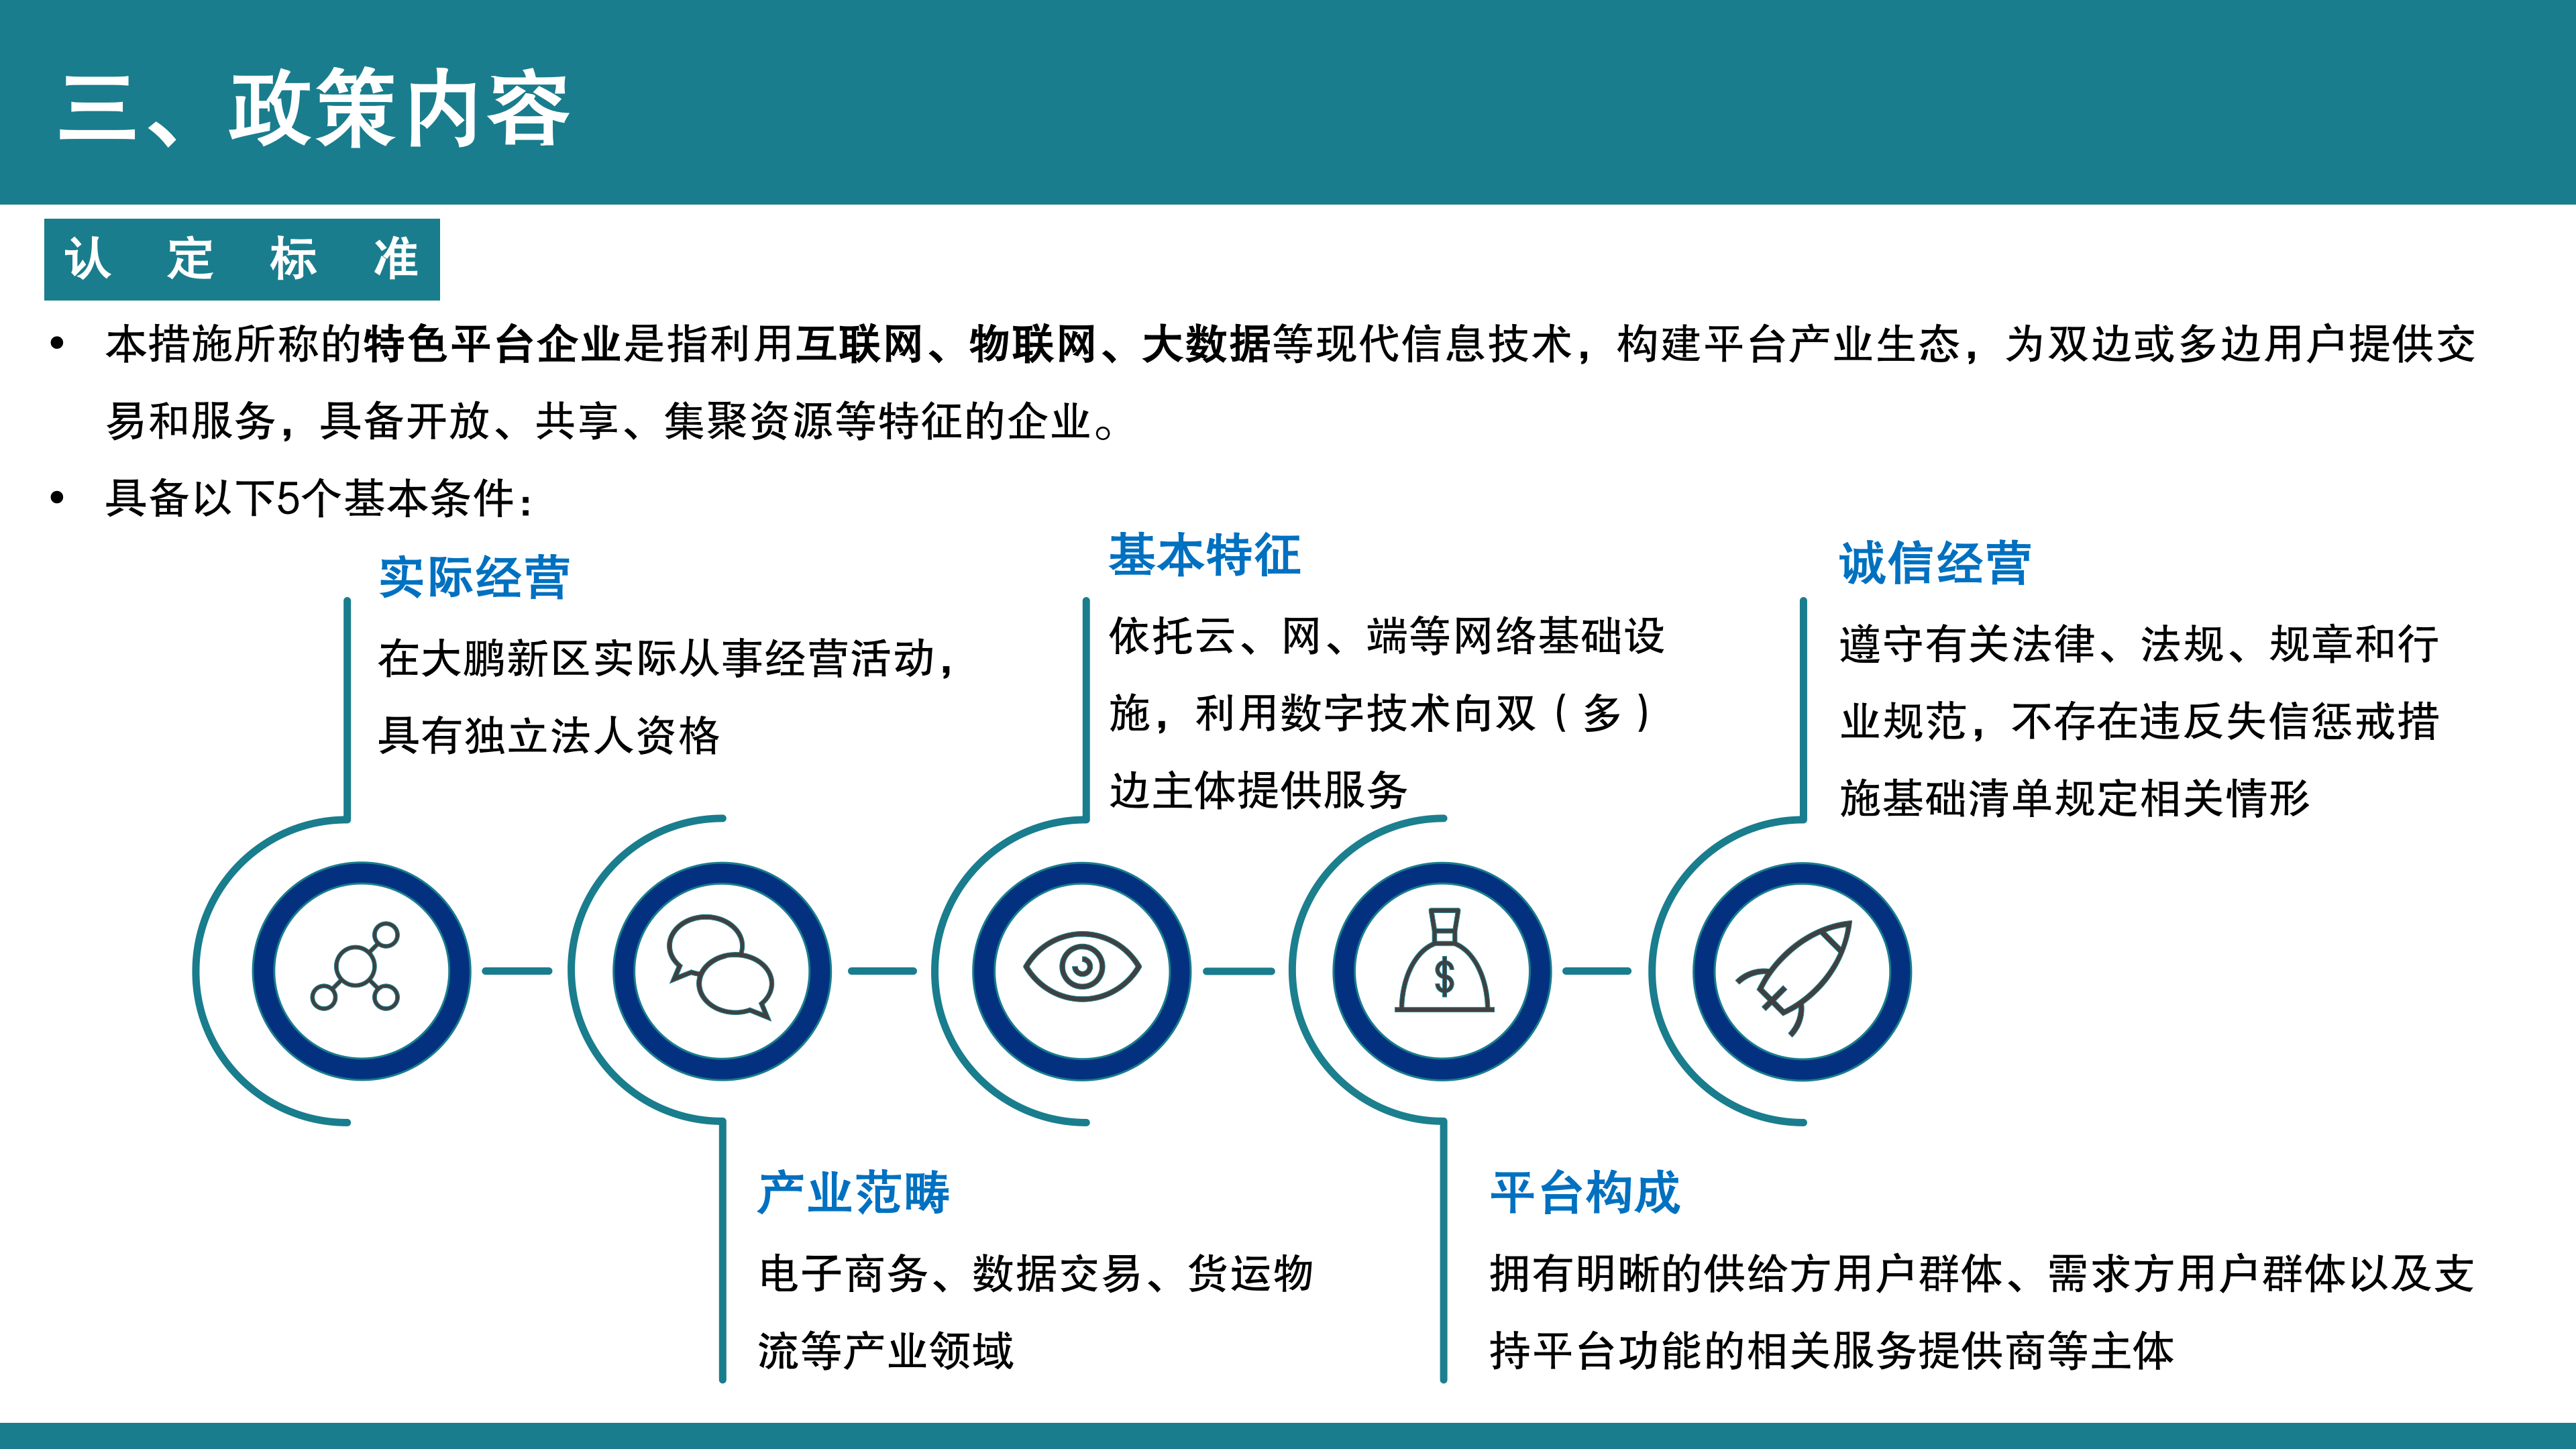 【公示版】《深圳市大鹏新区关于促进特色平台经济发展的若干措施》政策解读_05.png